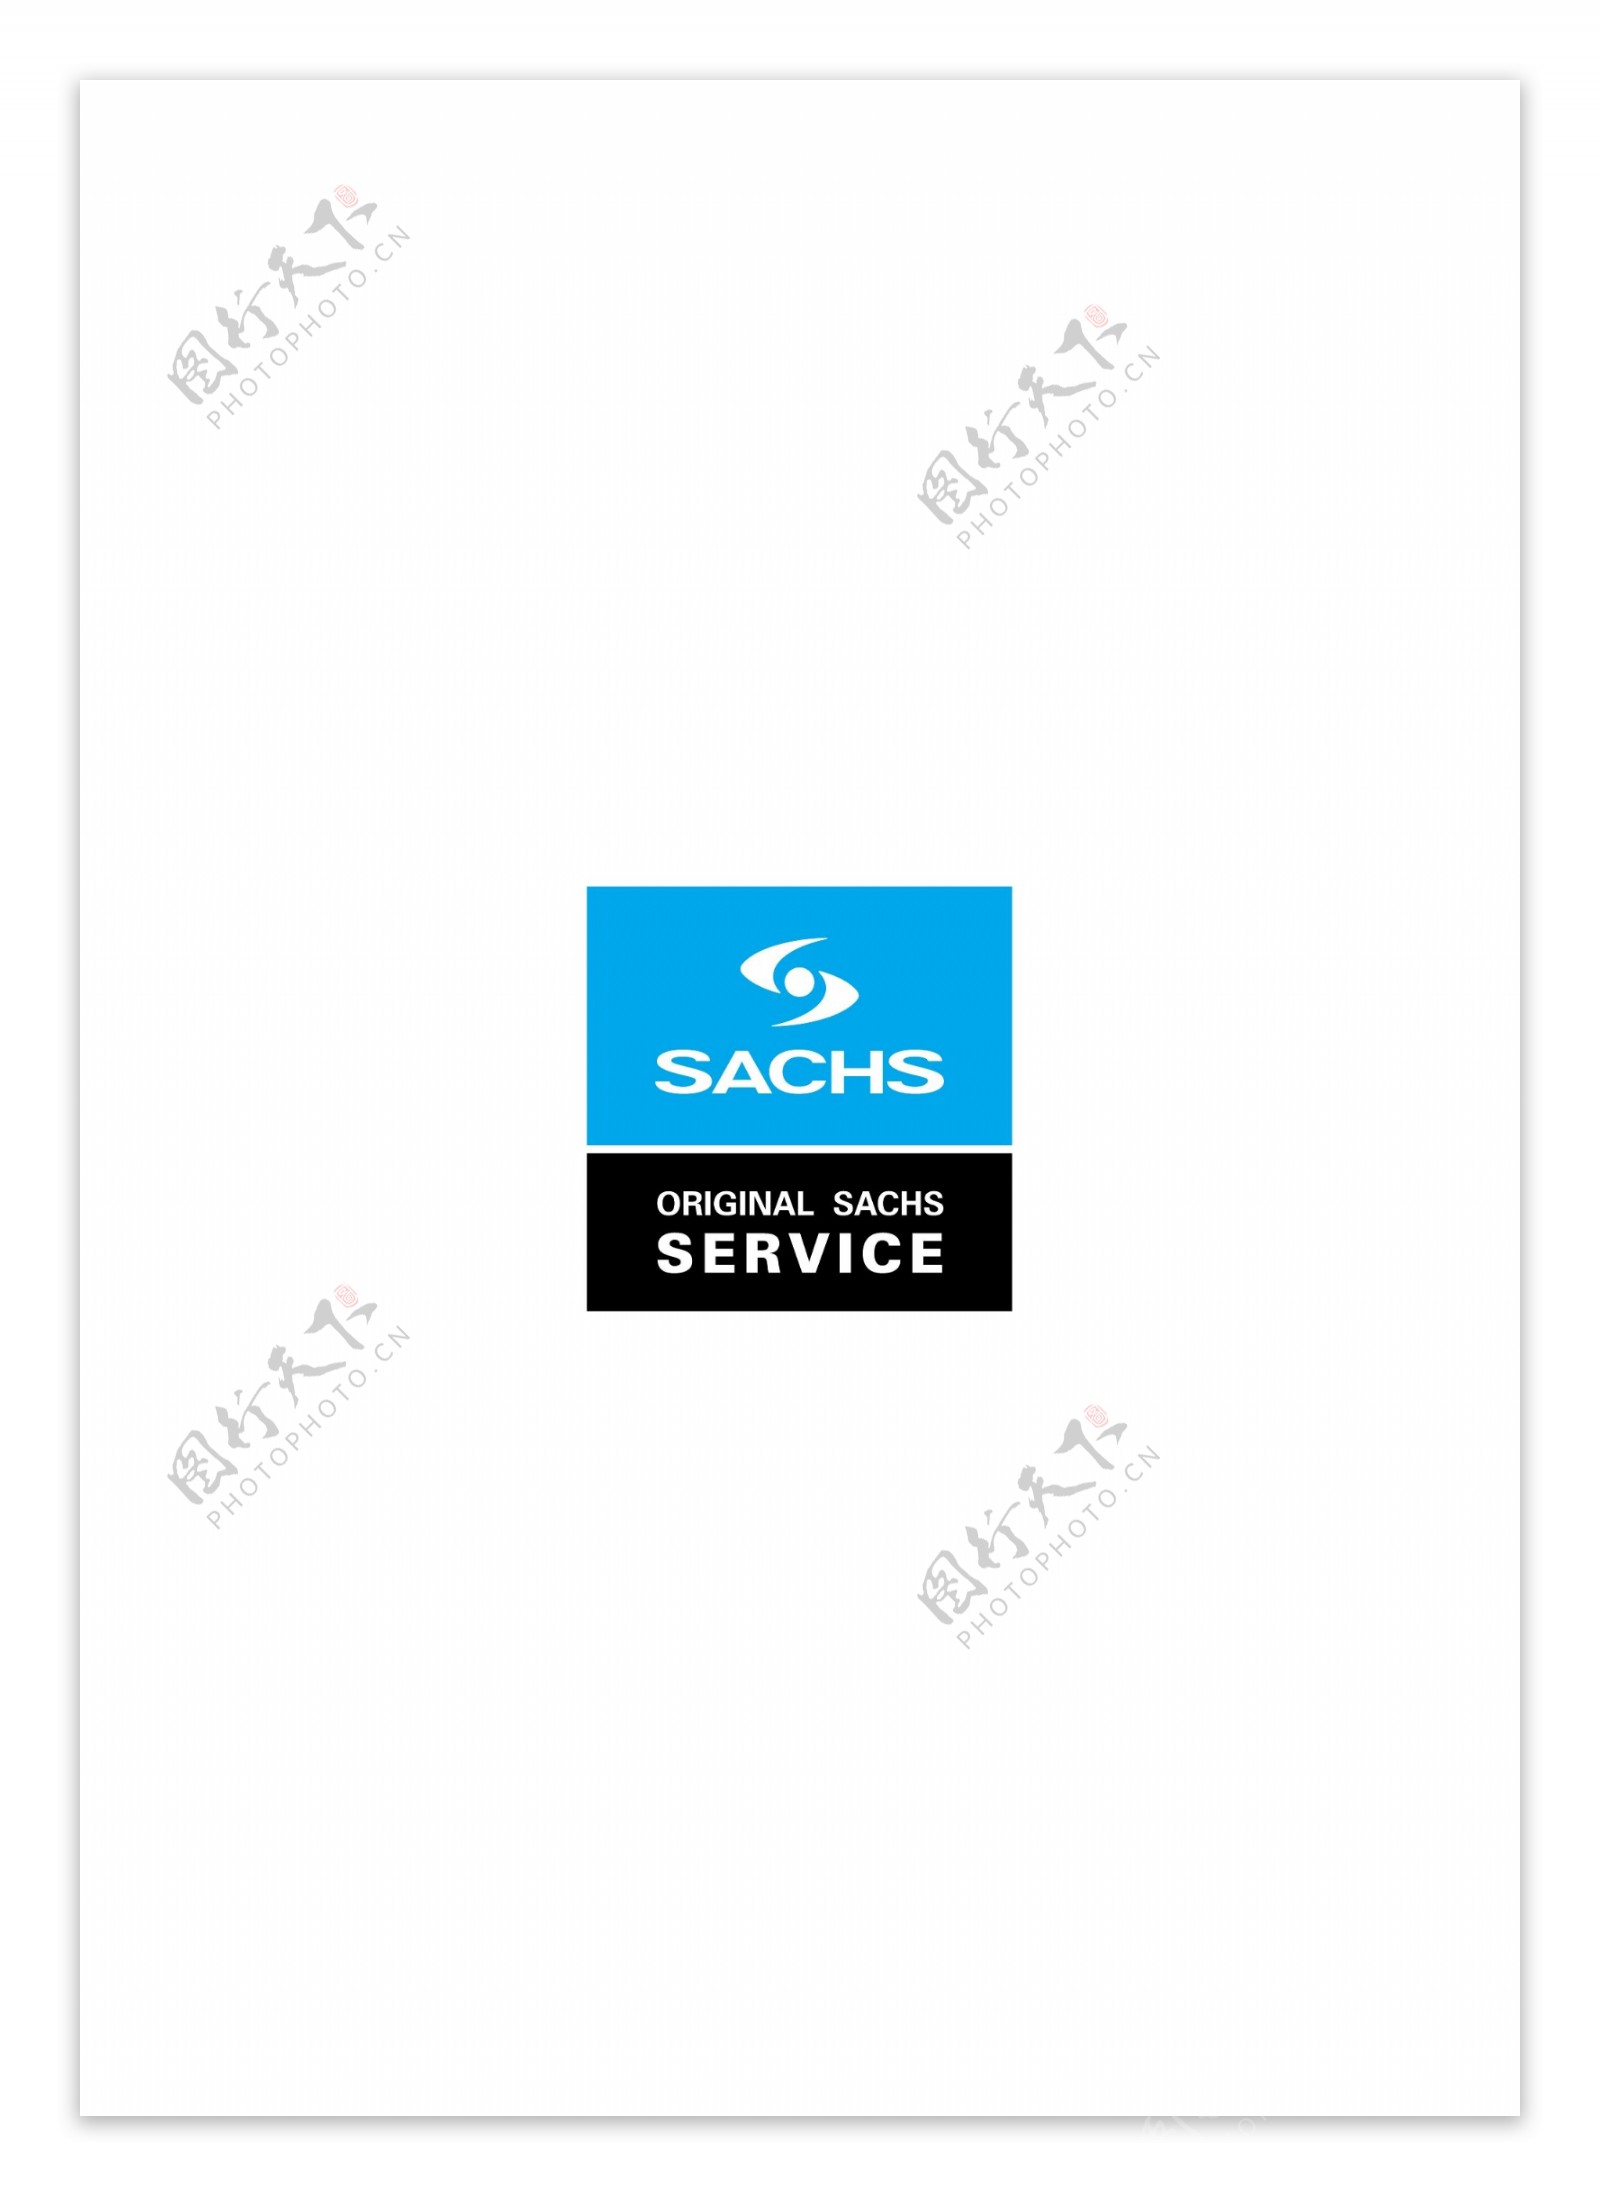 SachsOriginalSachsServicelogo设计欣赏SachsOriginalSachsService服务公司标志下载标志设计欣赏